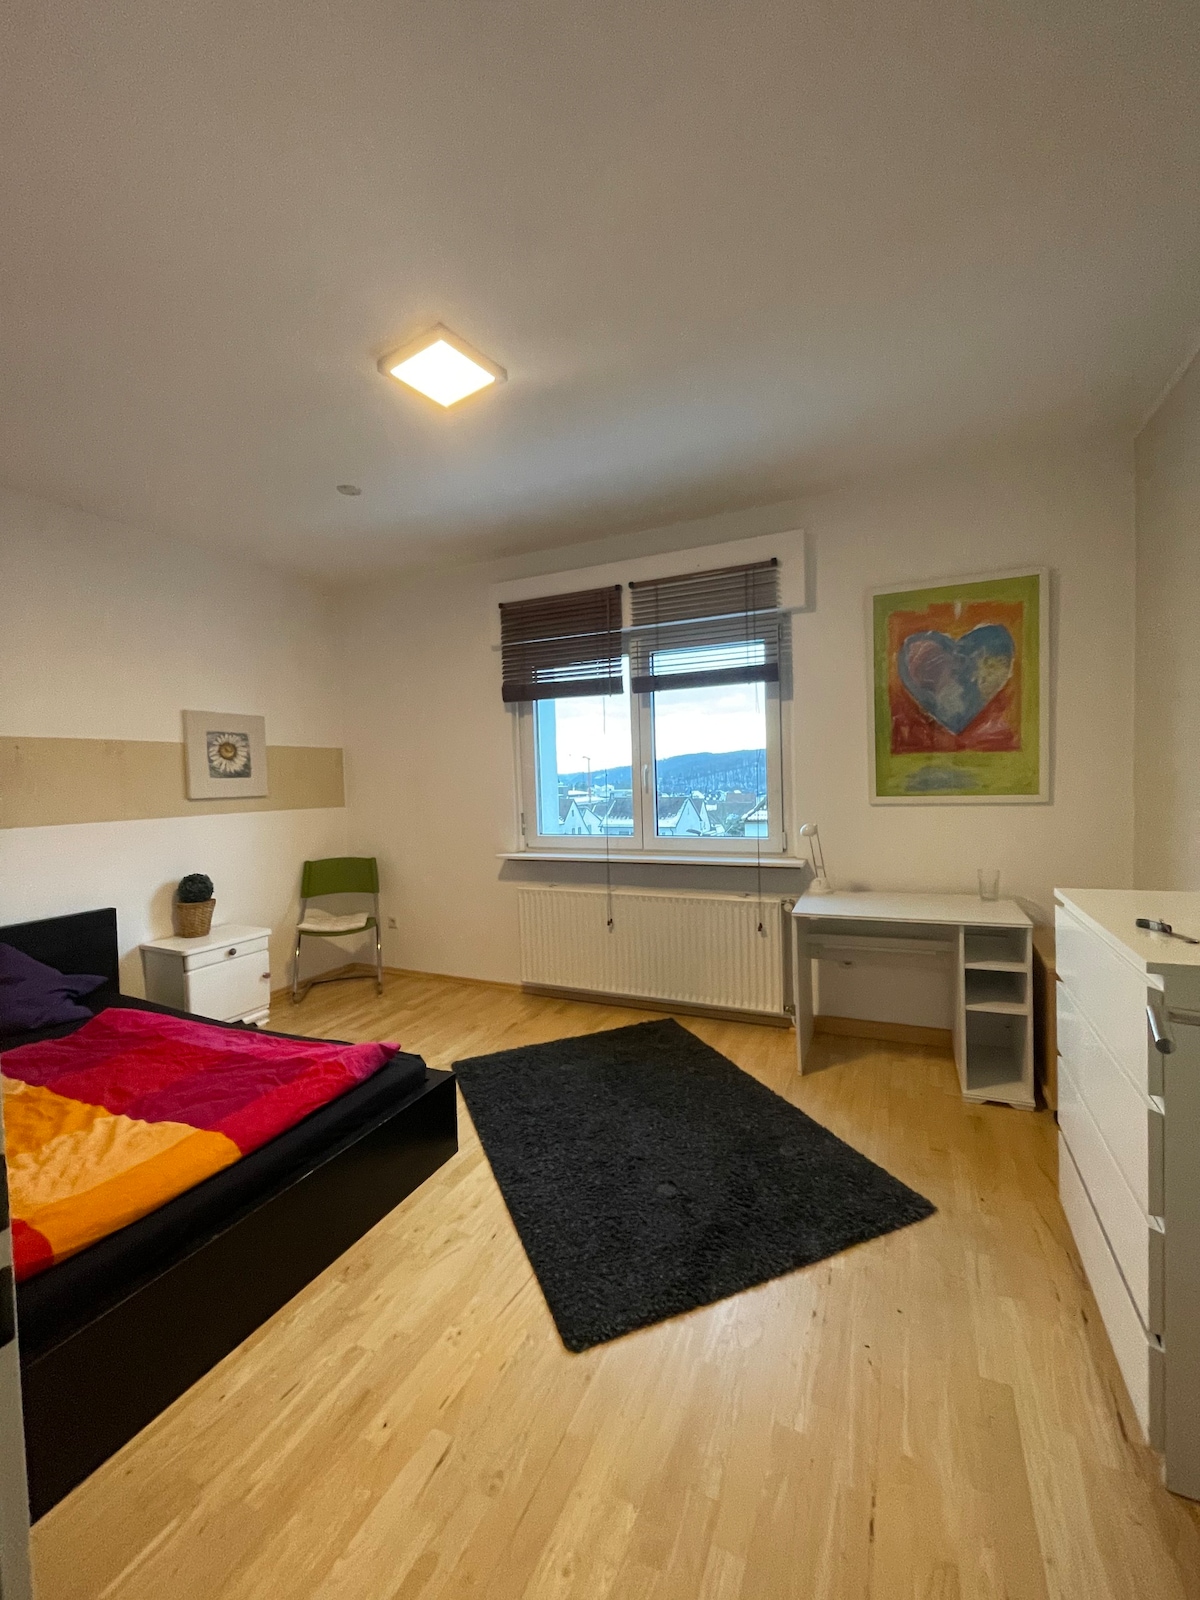 1 Zimmer Apartment in Neheim